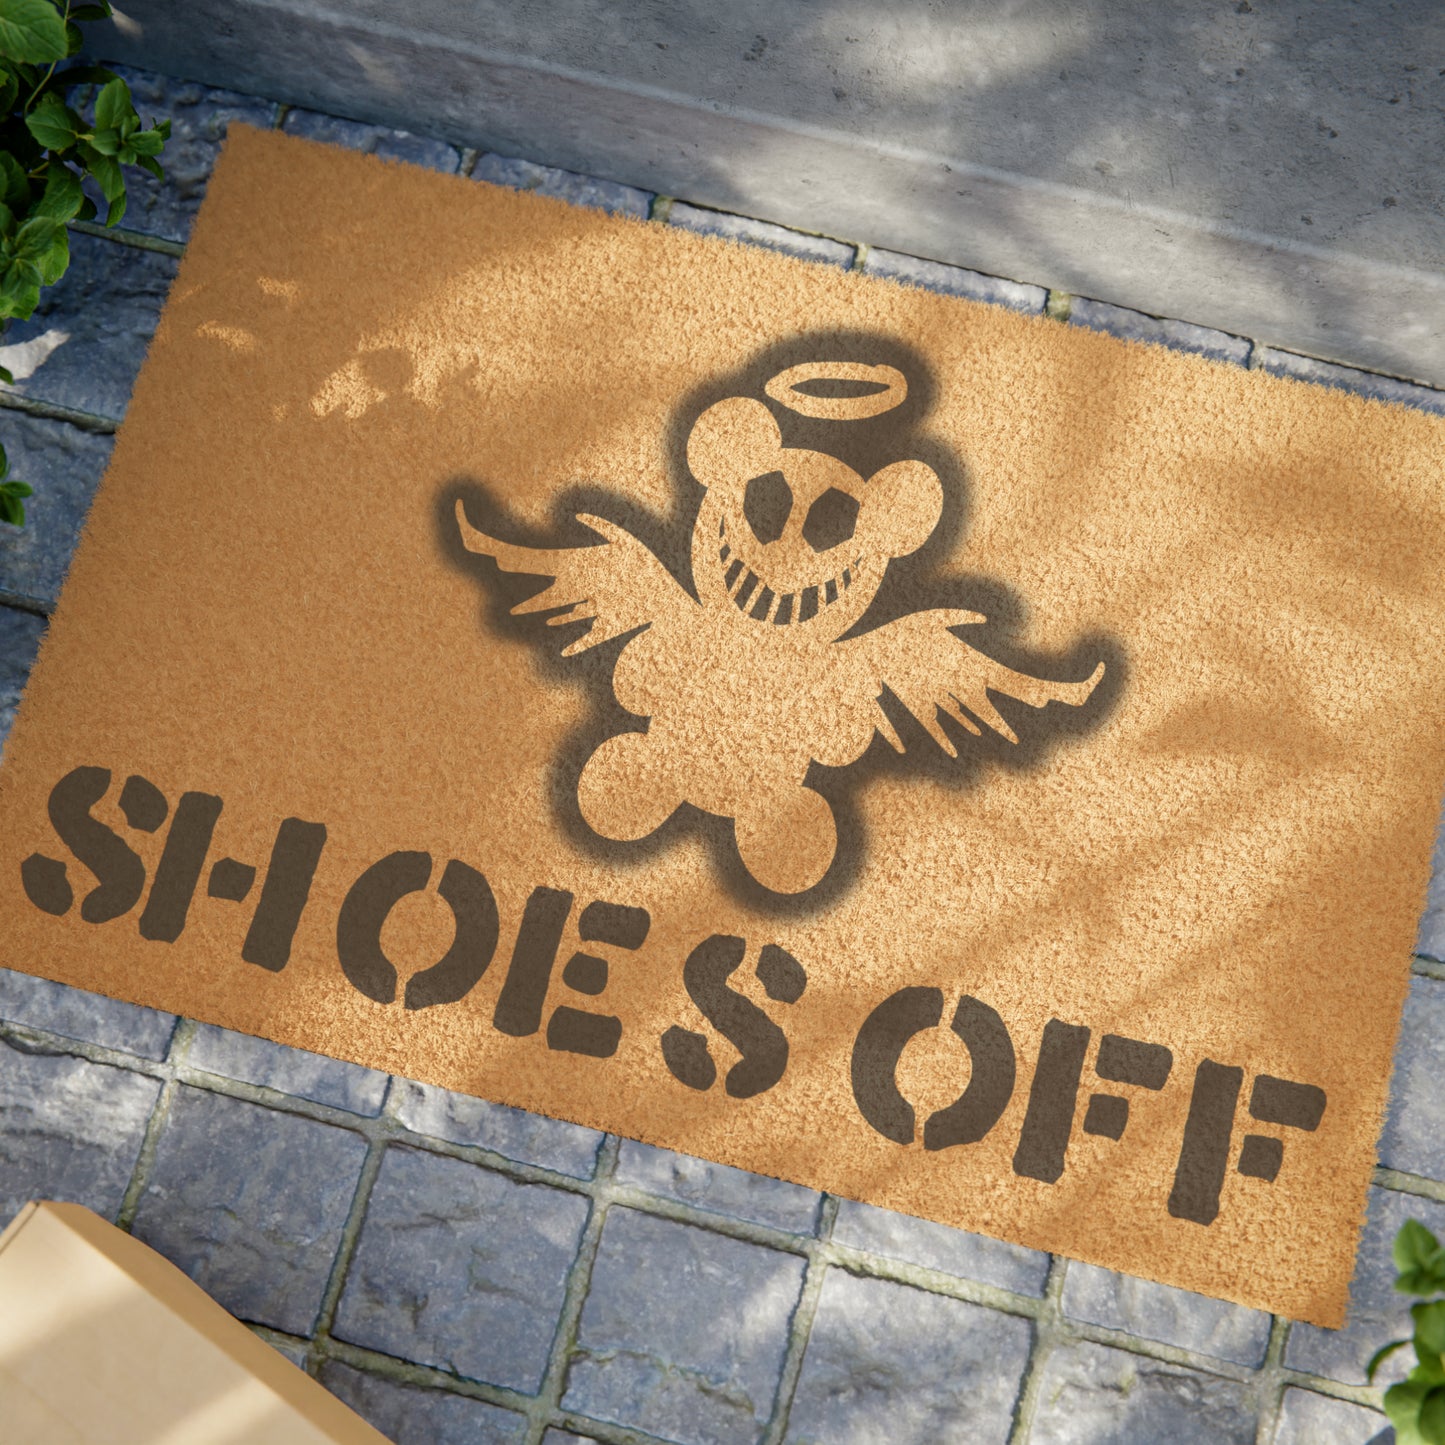 Shoes Off Doormat